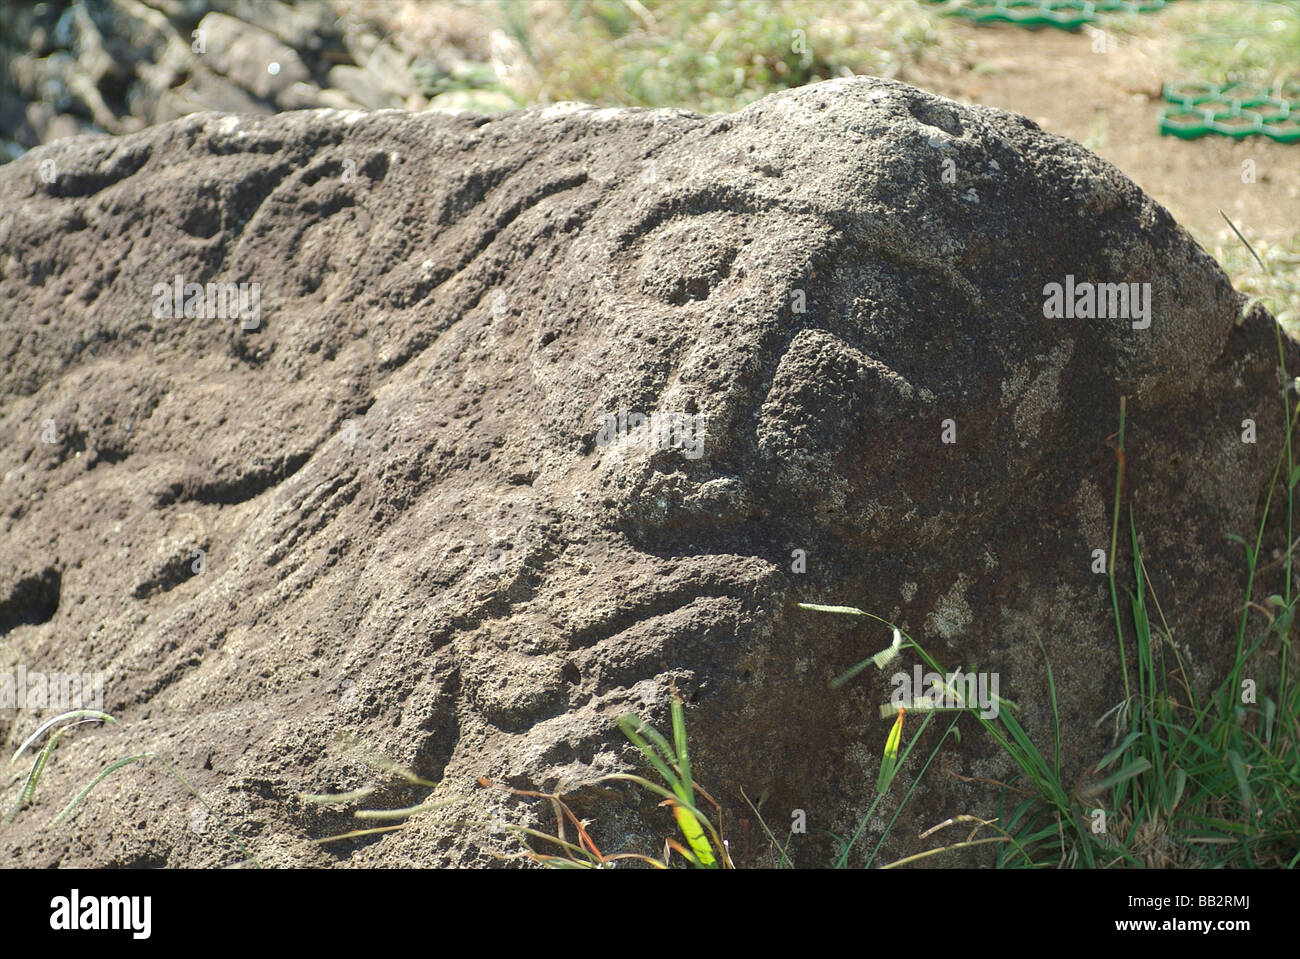 Incisioni rupestri di Makemake, Rapa Nui dio della fertilità e Creatore dell'umanità. su rocce in Orongo, Rapa Nui - Isola di Pasqua, Cile. Foto Stock